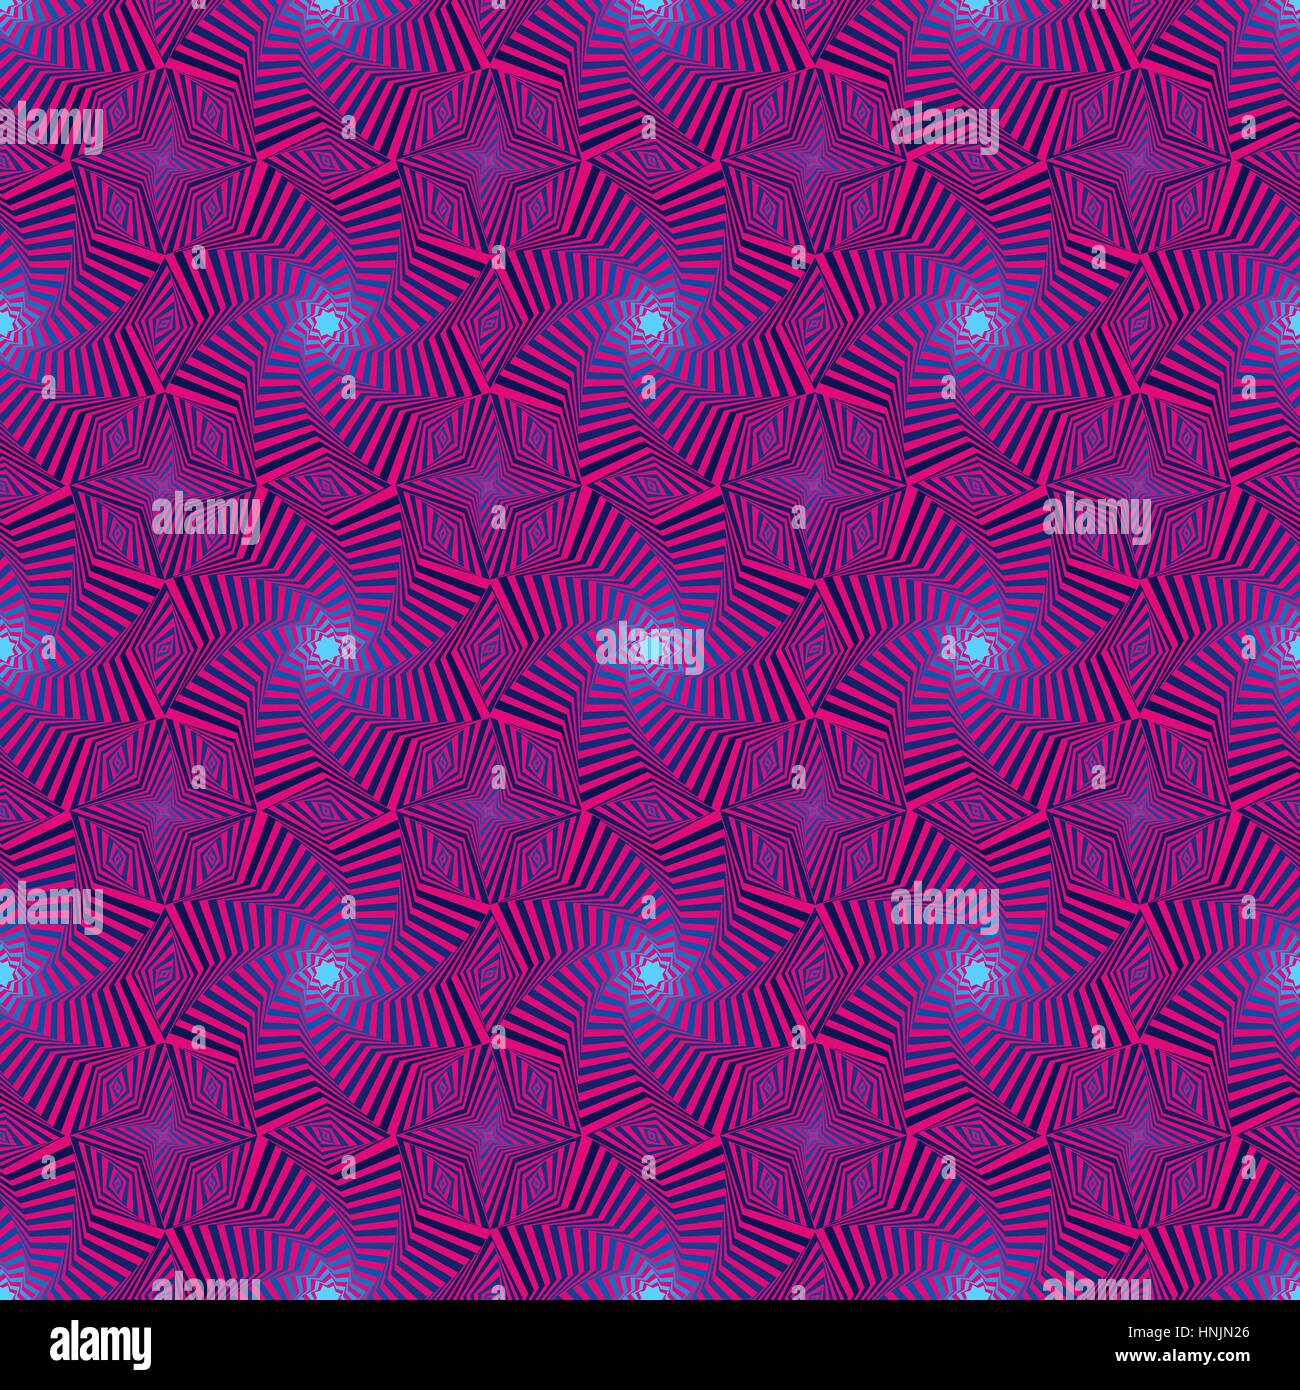 Abstract vector transparente avec motif étoile octogonale concentriques formant les séquences dans des tons bleu et rose Illustration de Vecteur